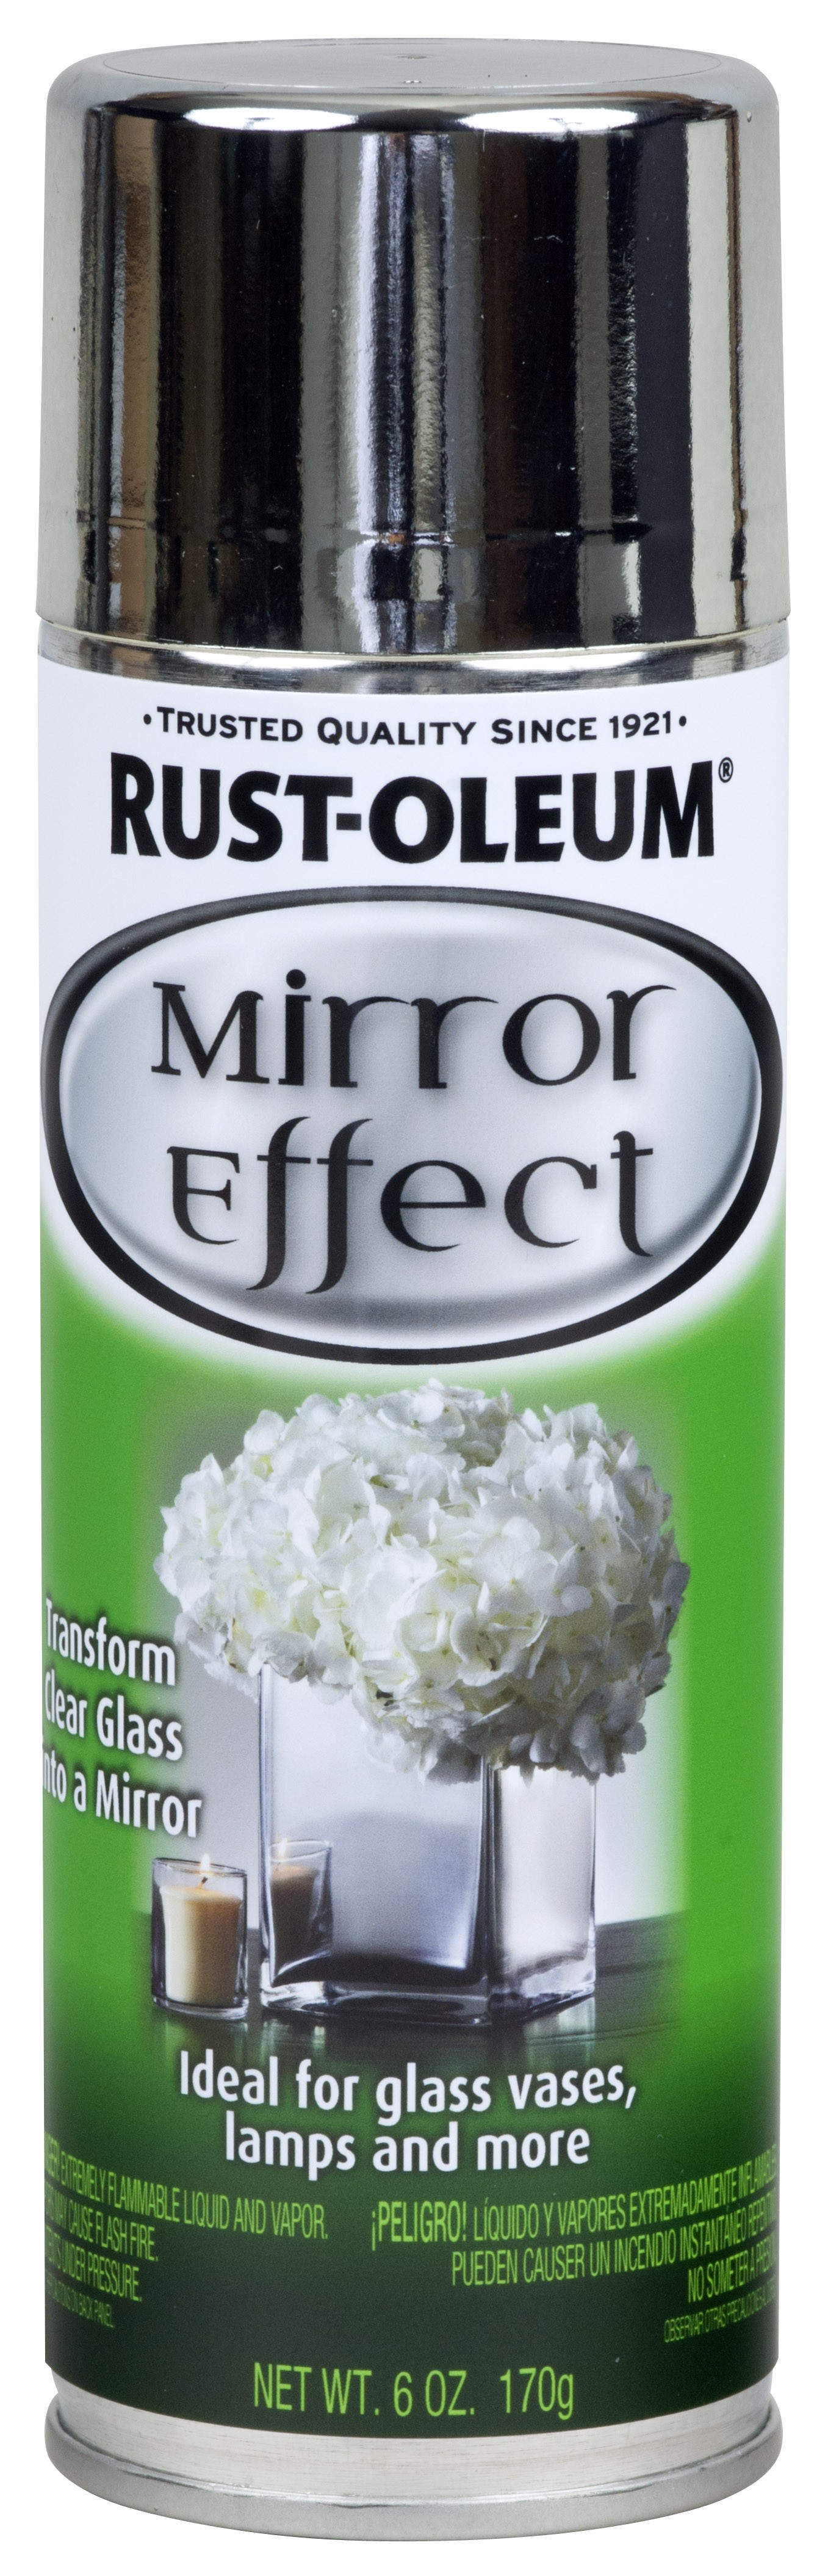 Mirror Efect – Efeito Espelho 1 COR